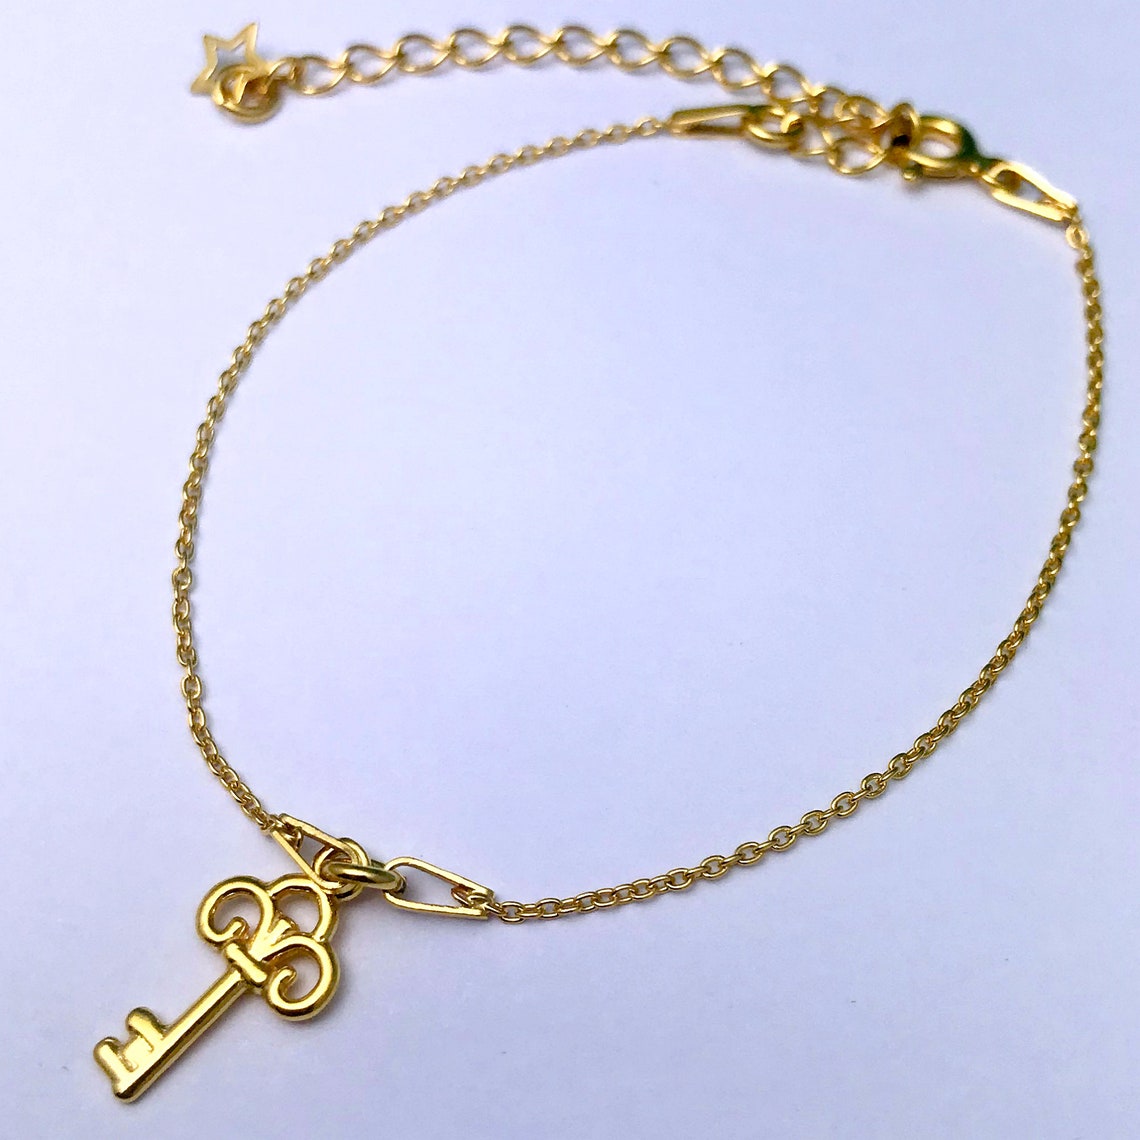 Gold Key Charm Bracelet Sterling Silver Bracelet - Etsy